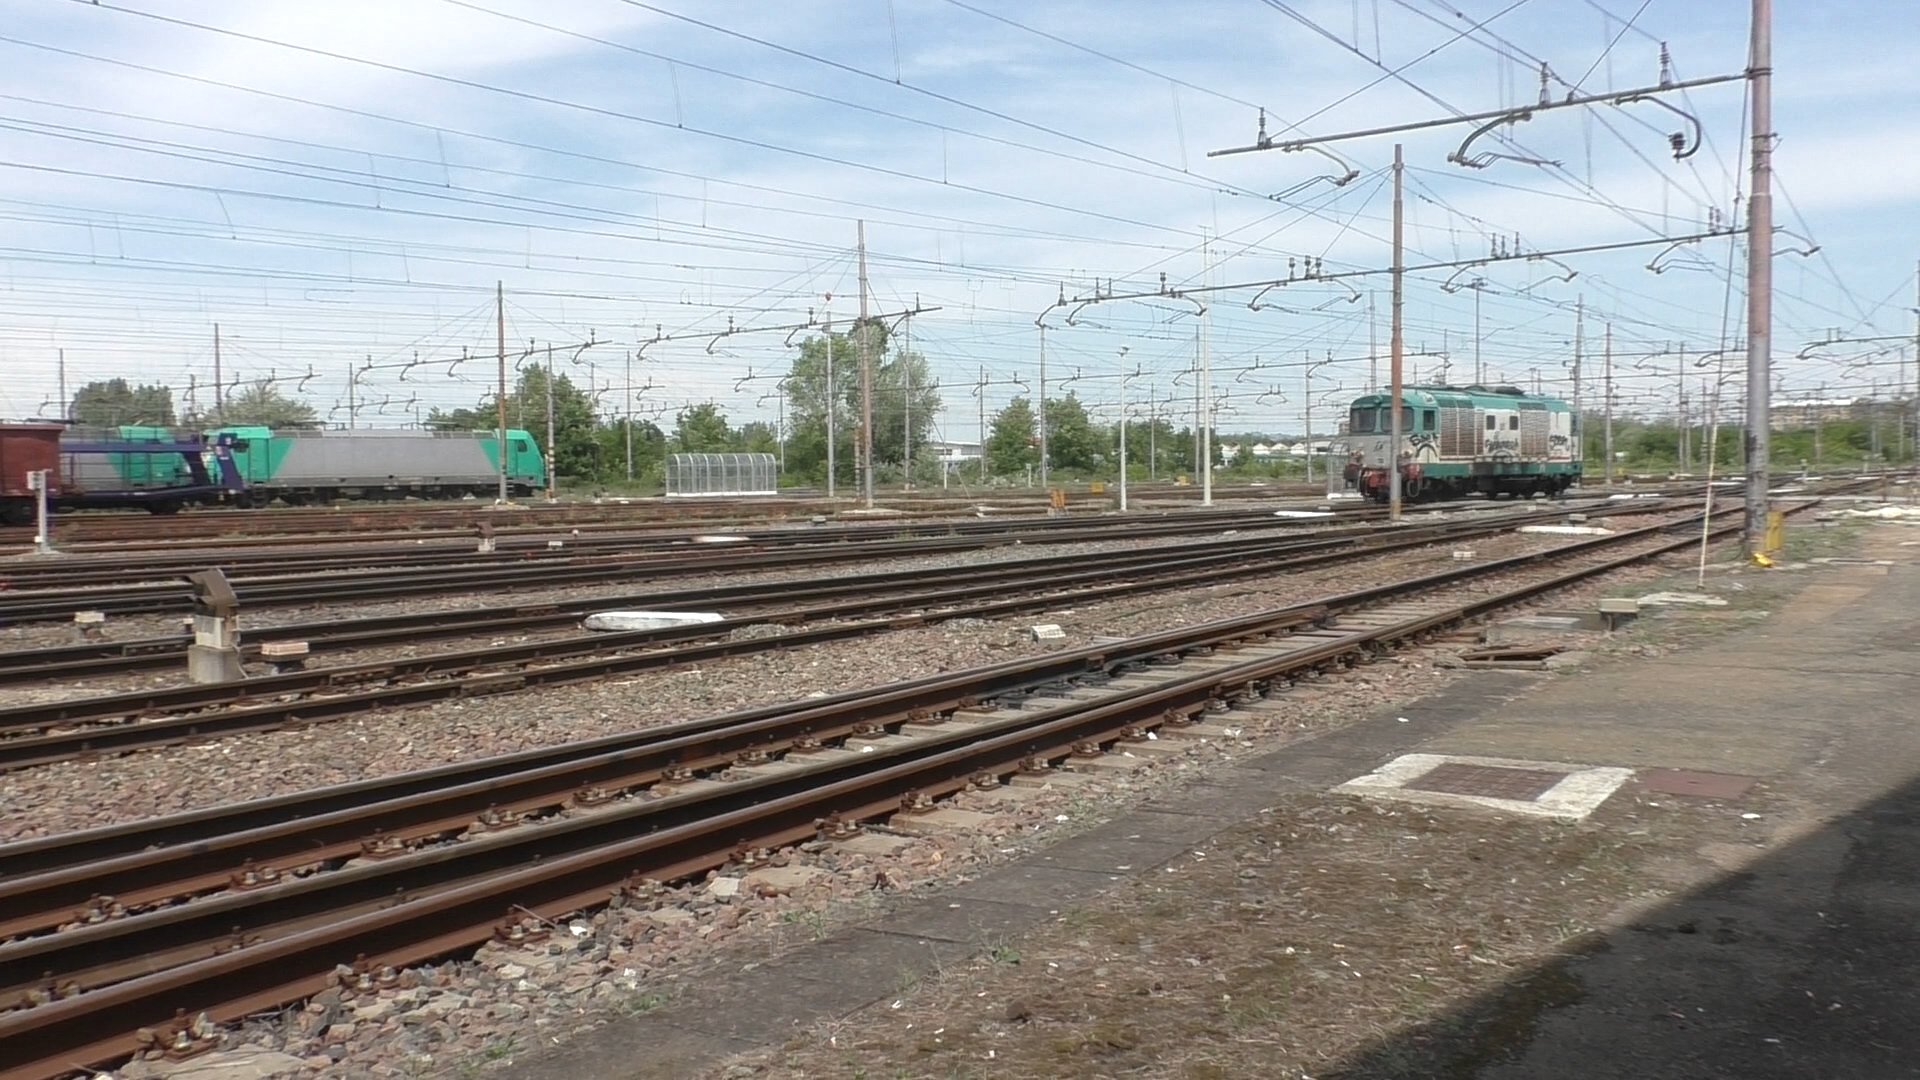 Scalo merci ferroviario Alessandria, Molinari: “Governo pronto a investire, progetto da 250 milioni di euro”